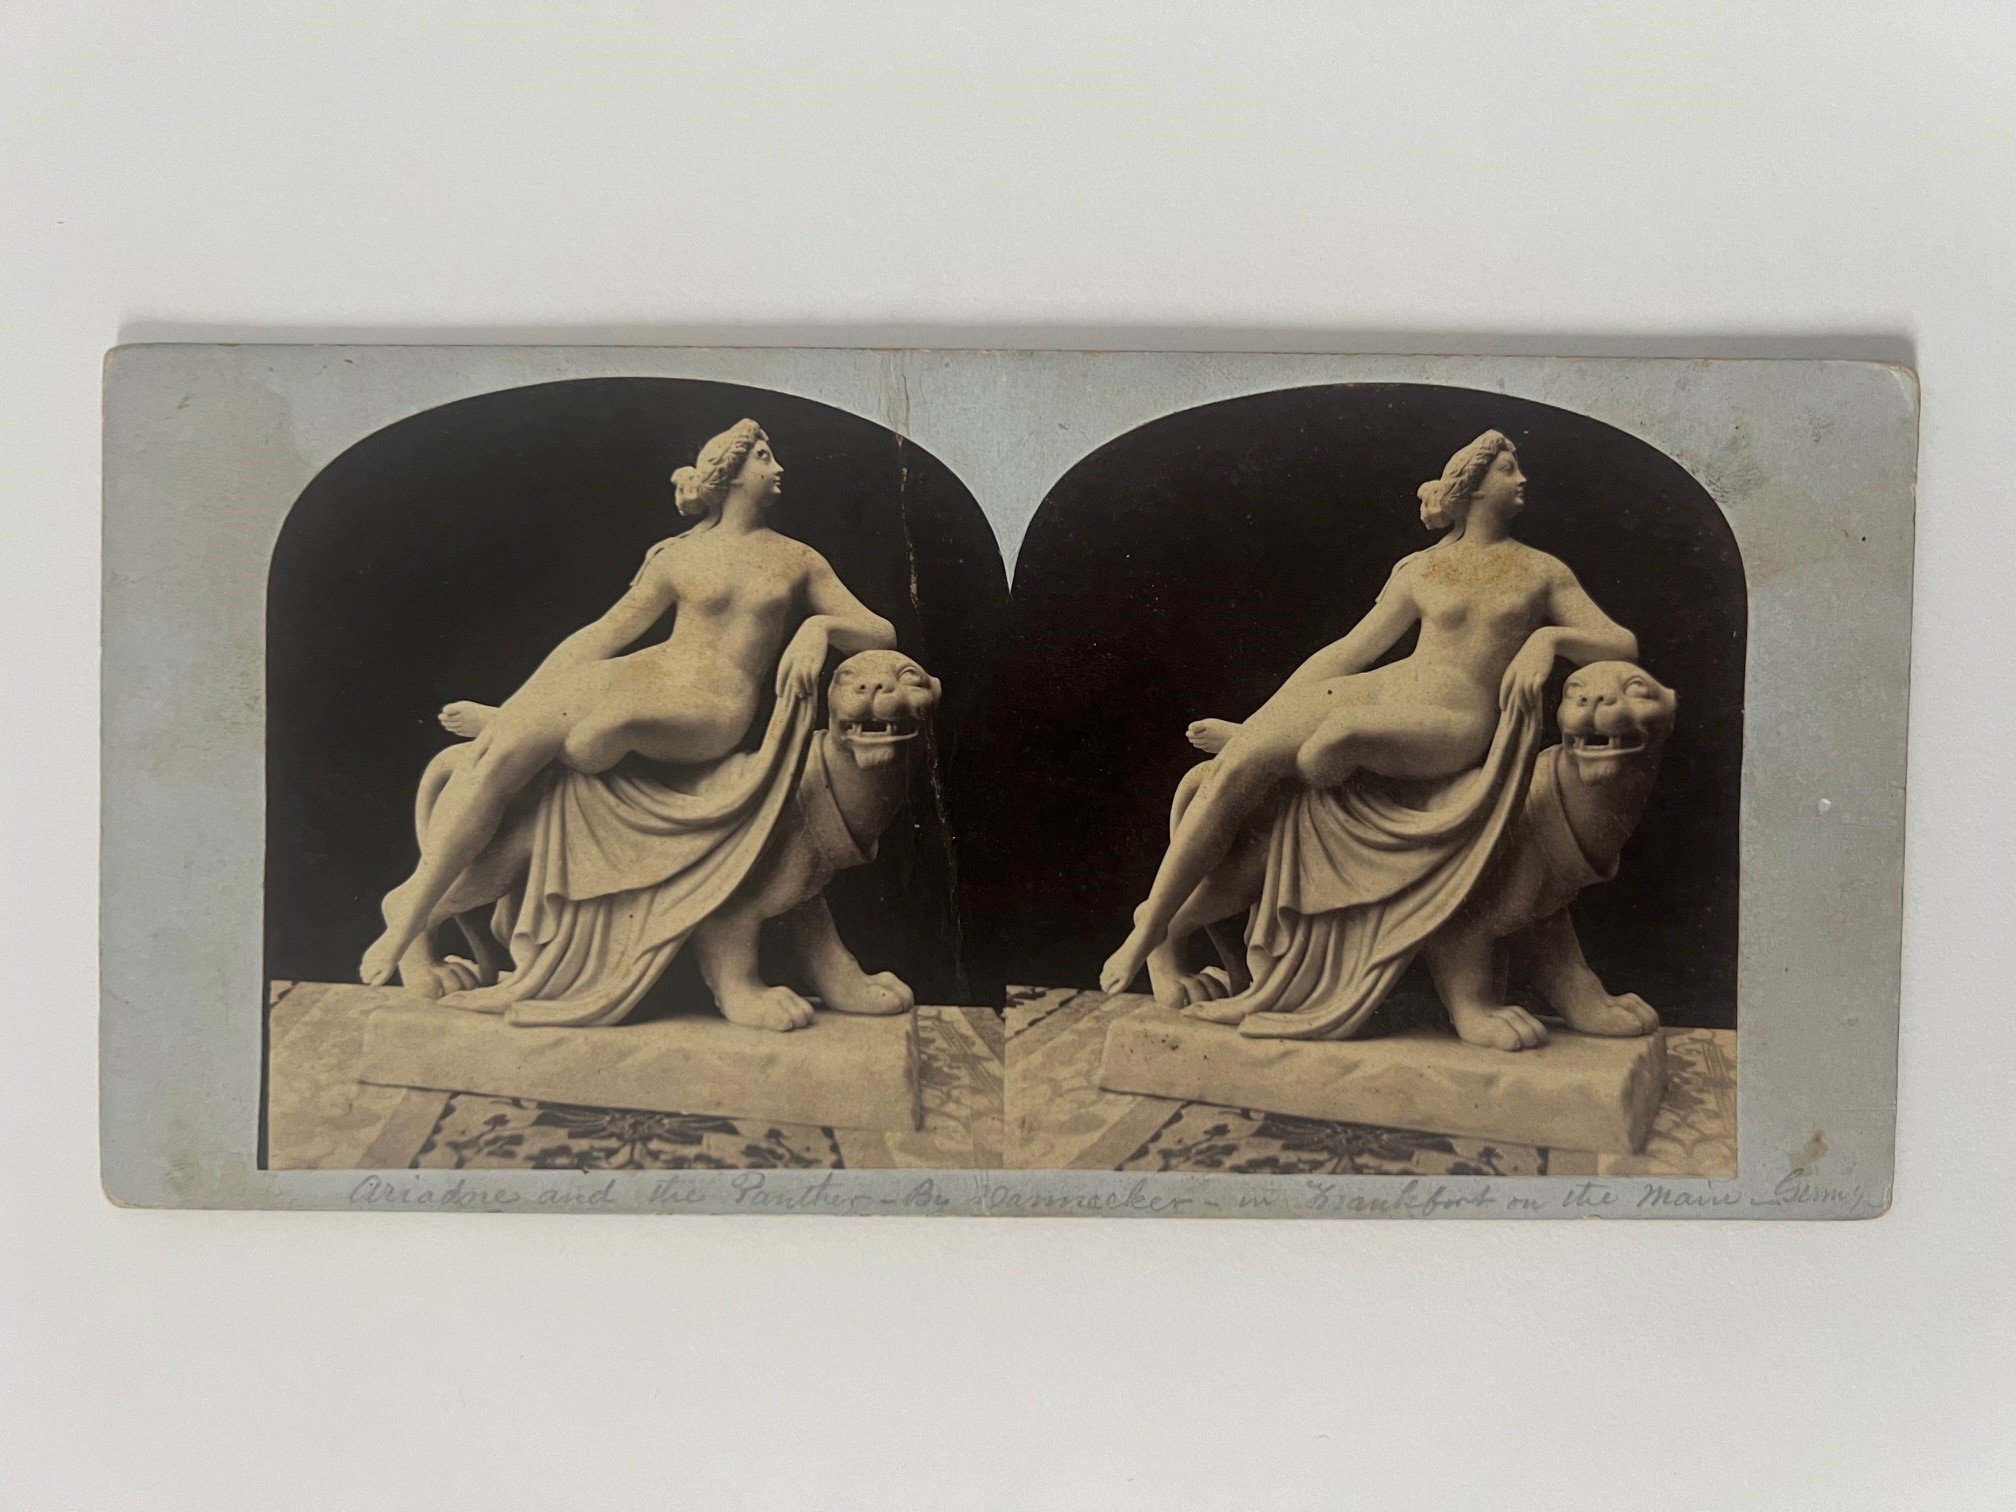 Stereobild, Unbekannter Fotograf, Frankfurt, Ariadne, ca. 1866. (Taunus-Rhein-Main - Regionalgeschichtliche Sammlung Dr. Stefan Naas CC BY-NC-SA)